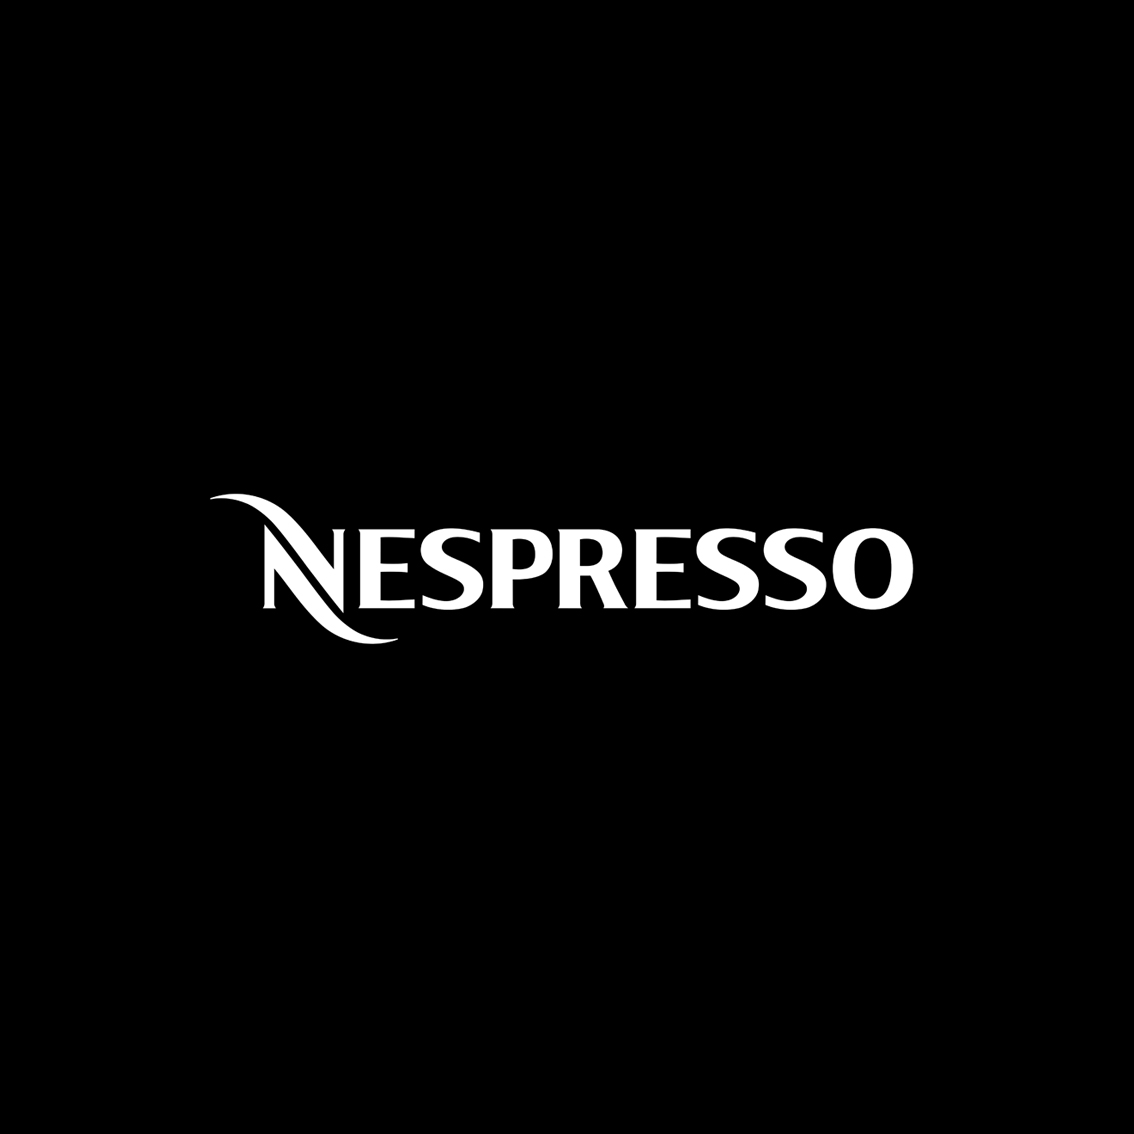 Nespresso.jpg